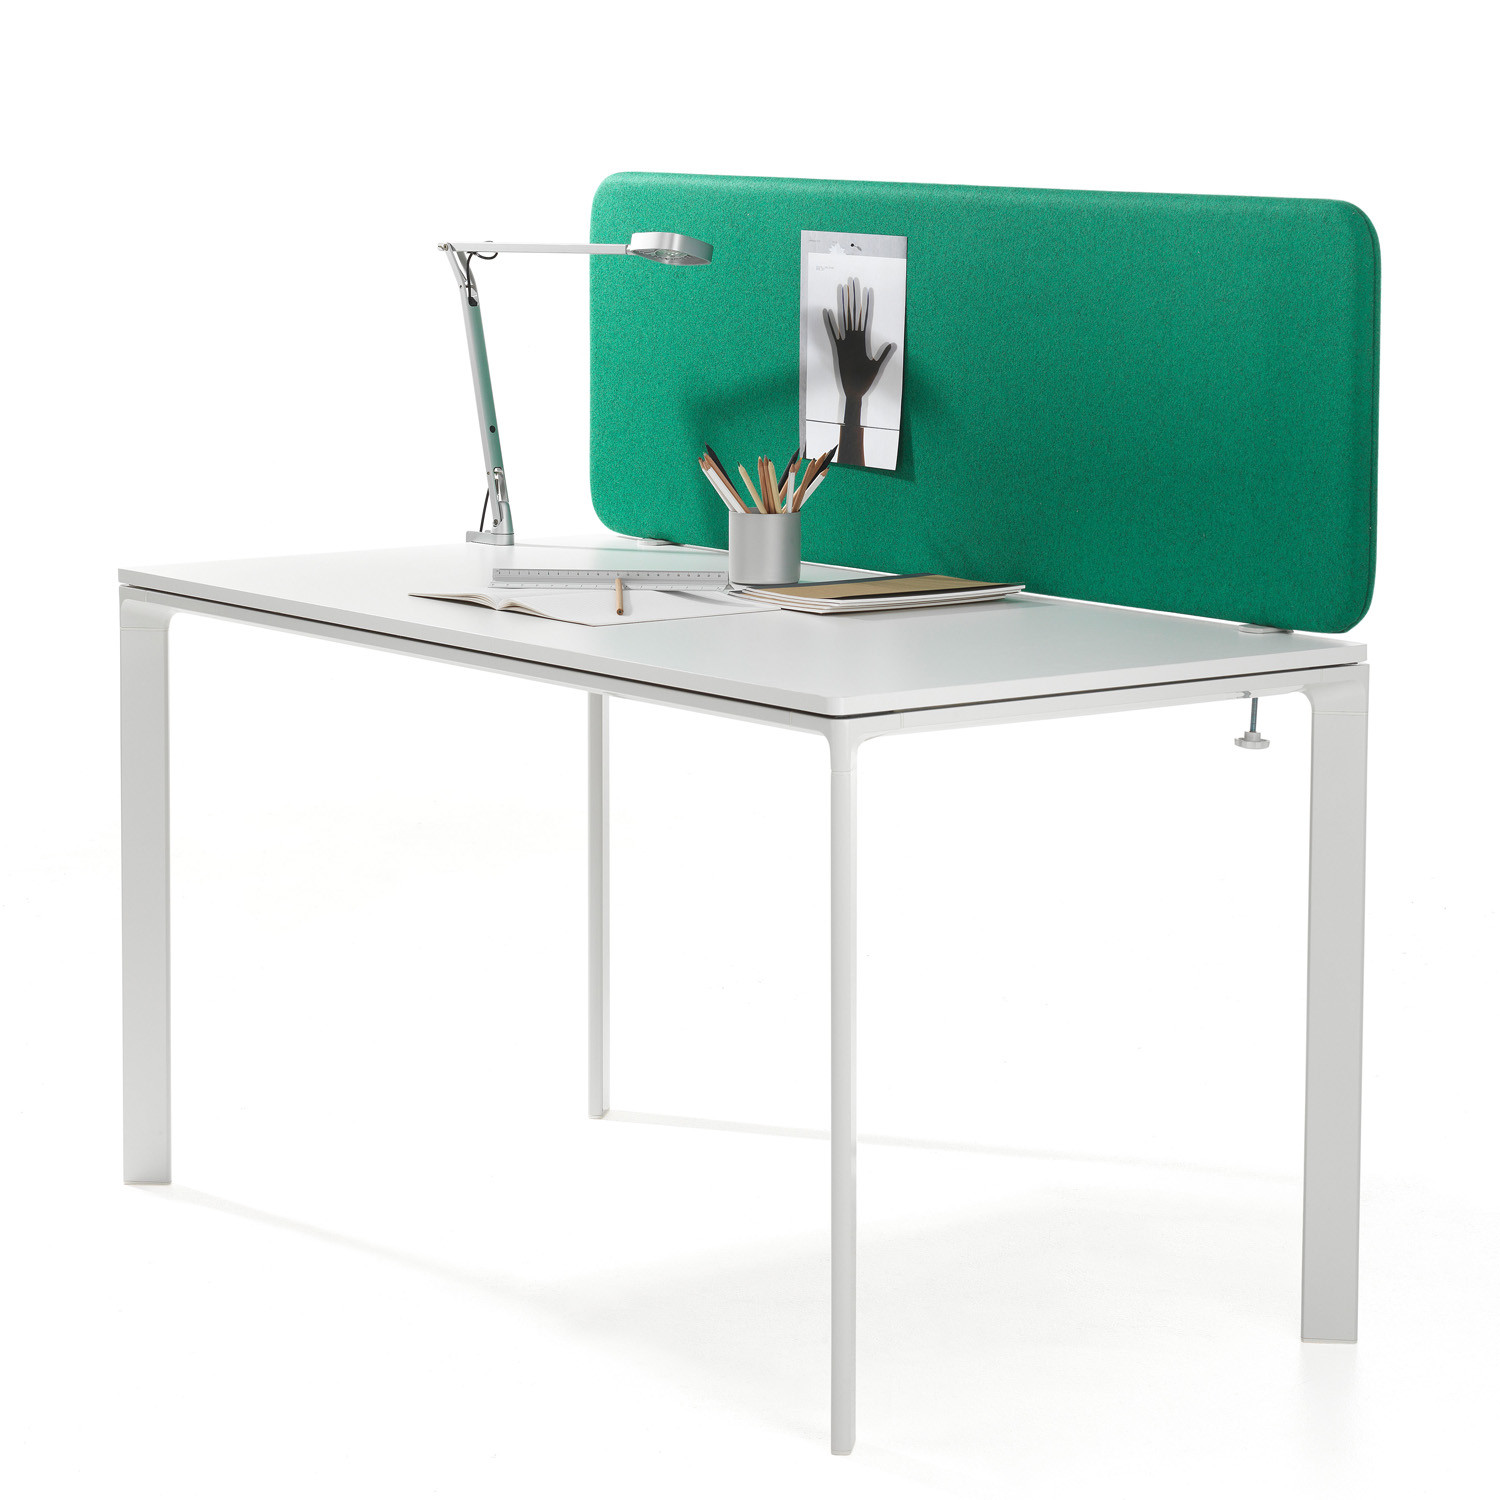 Softline rectangular desk screen